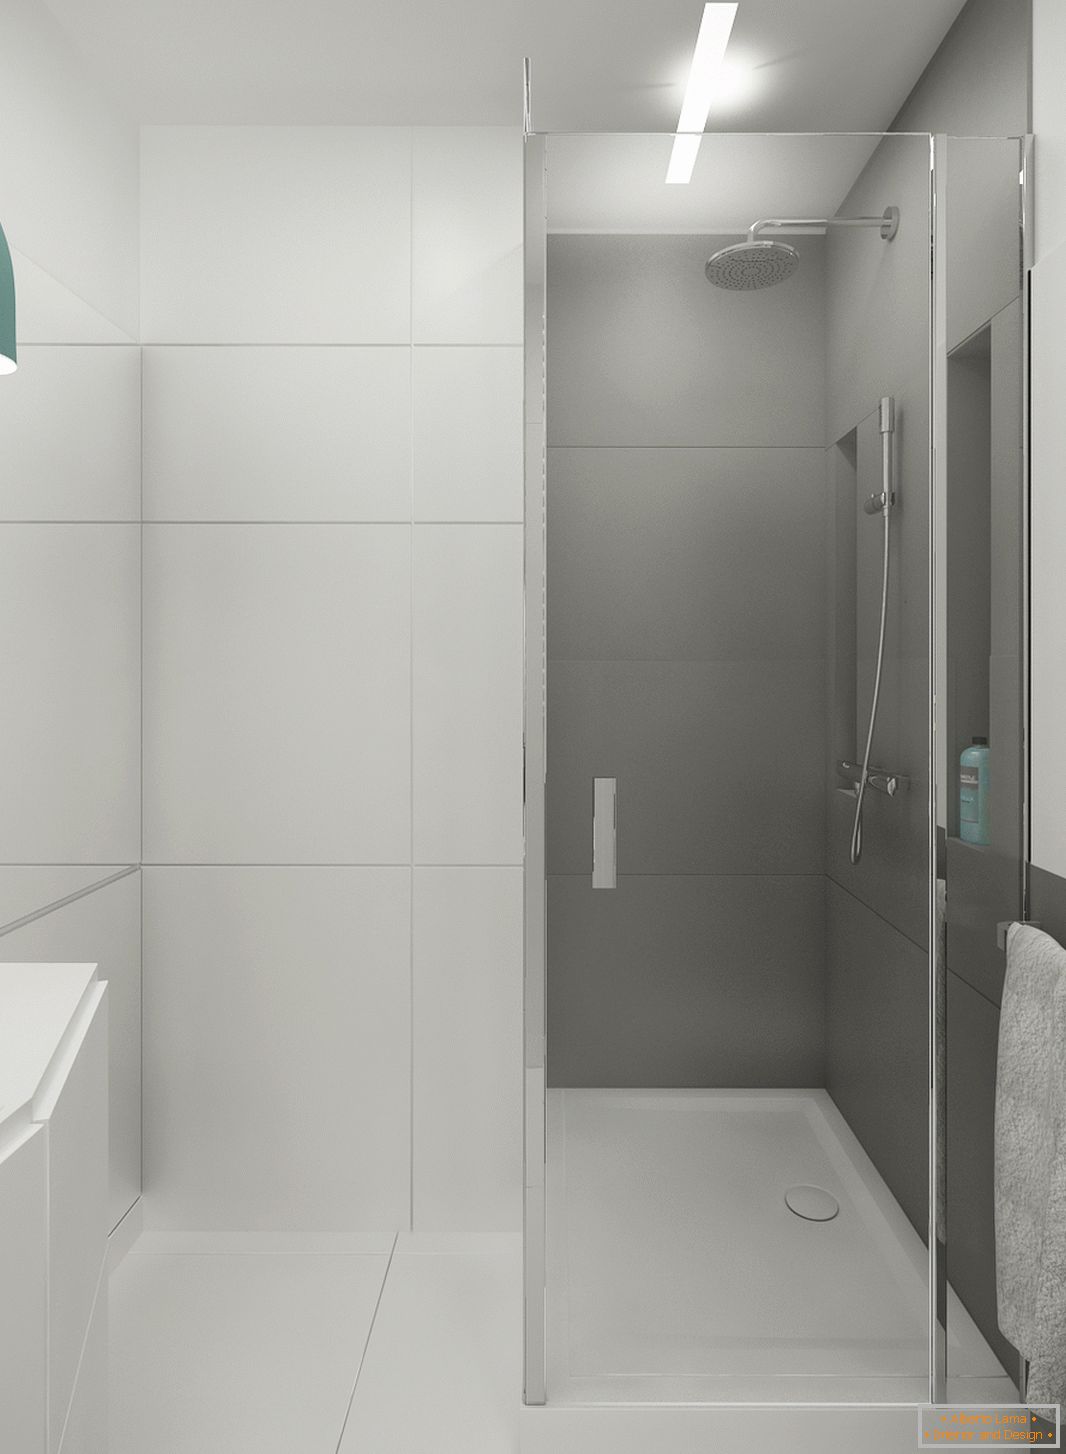 Badezimmer in weißer Farbe